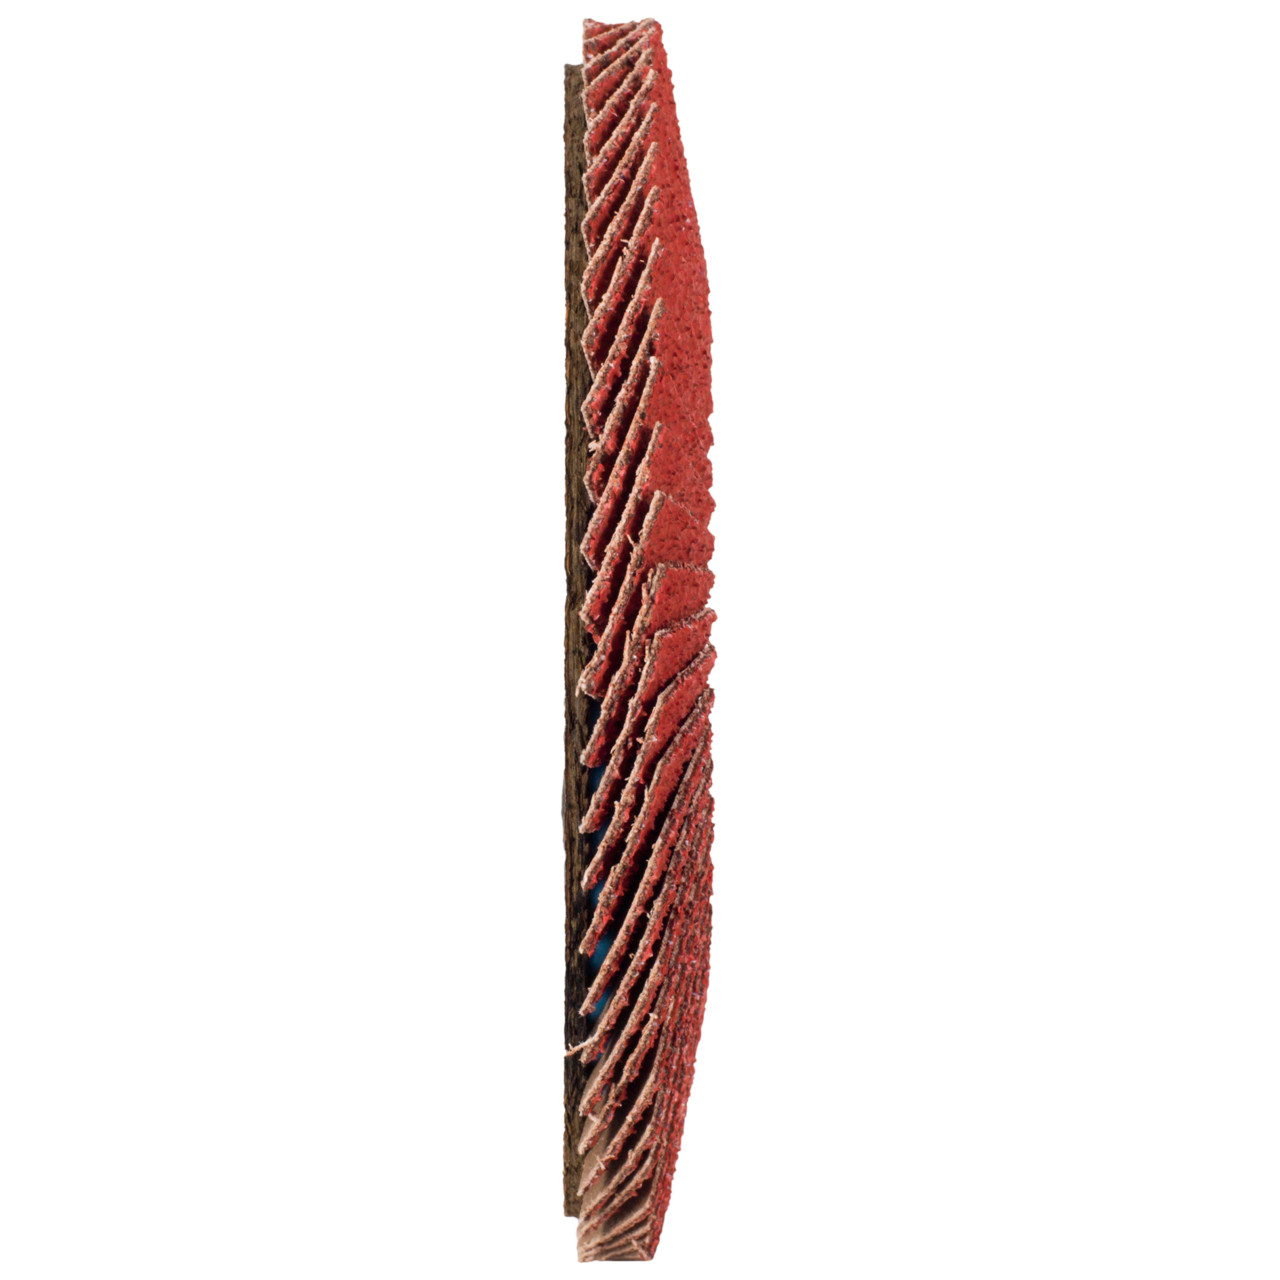 TYROLIT getande borgring DxH 115x22,23 CERABOND getande borgring voor roestvrij staal, P80, vorm: 27A - slingeruitvoering (glasvezeldragerhuisuitvoering), Art. 34165680